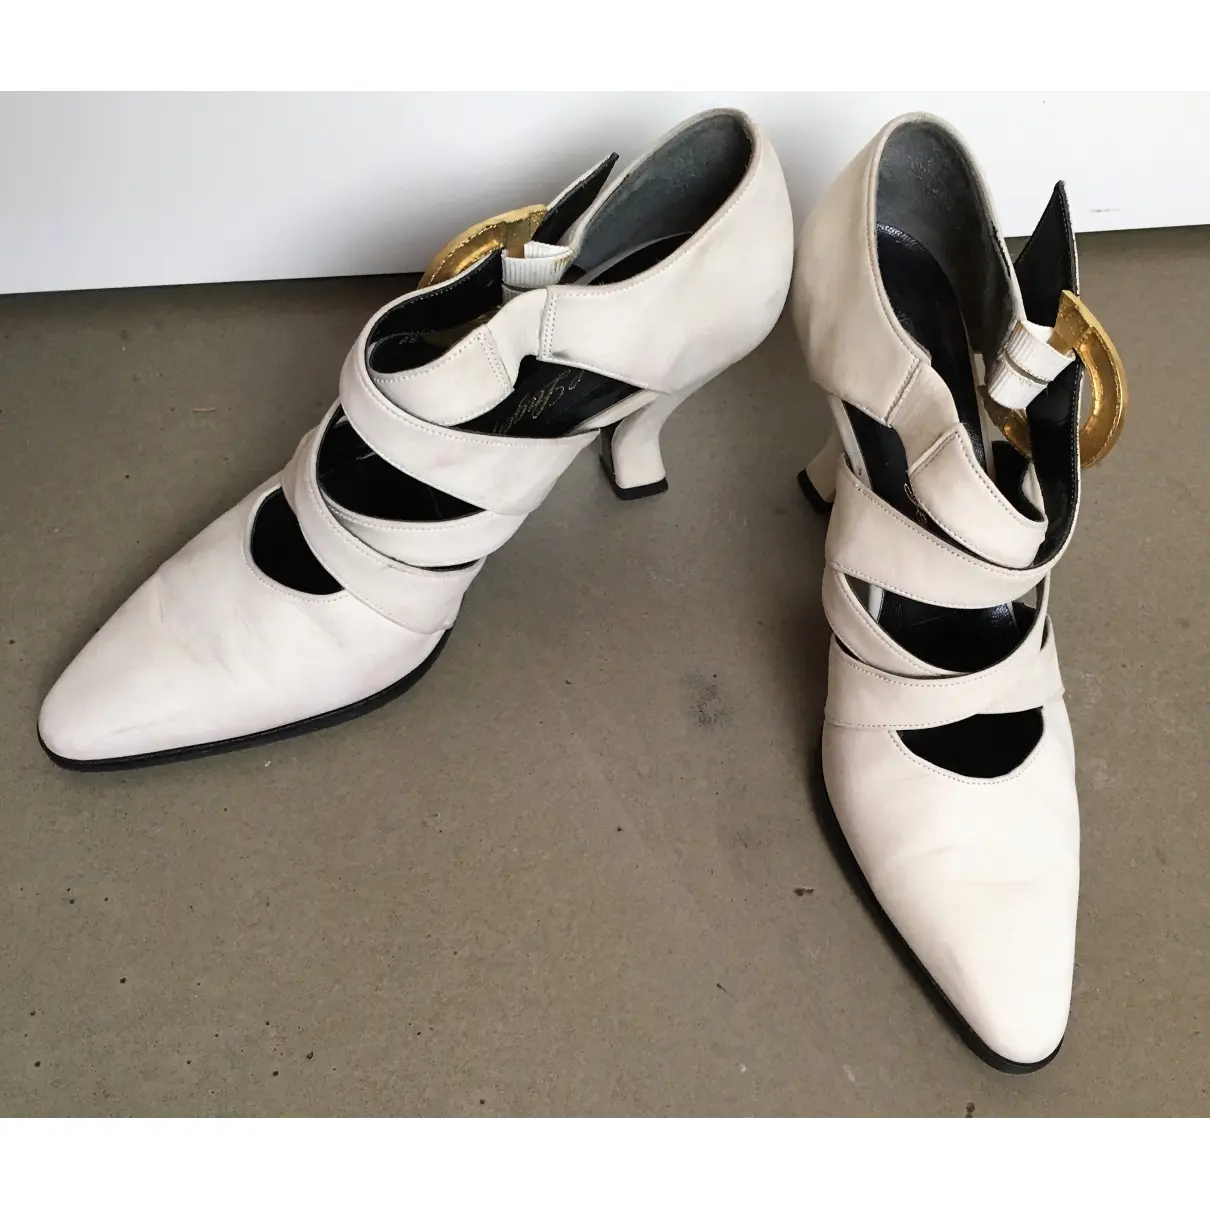 Buy Karl Lagerfeld Leather heels online - Vintage